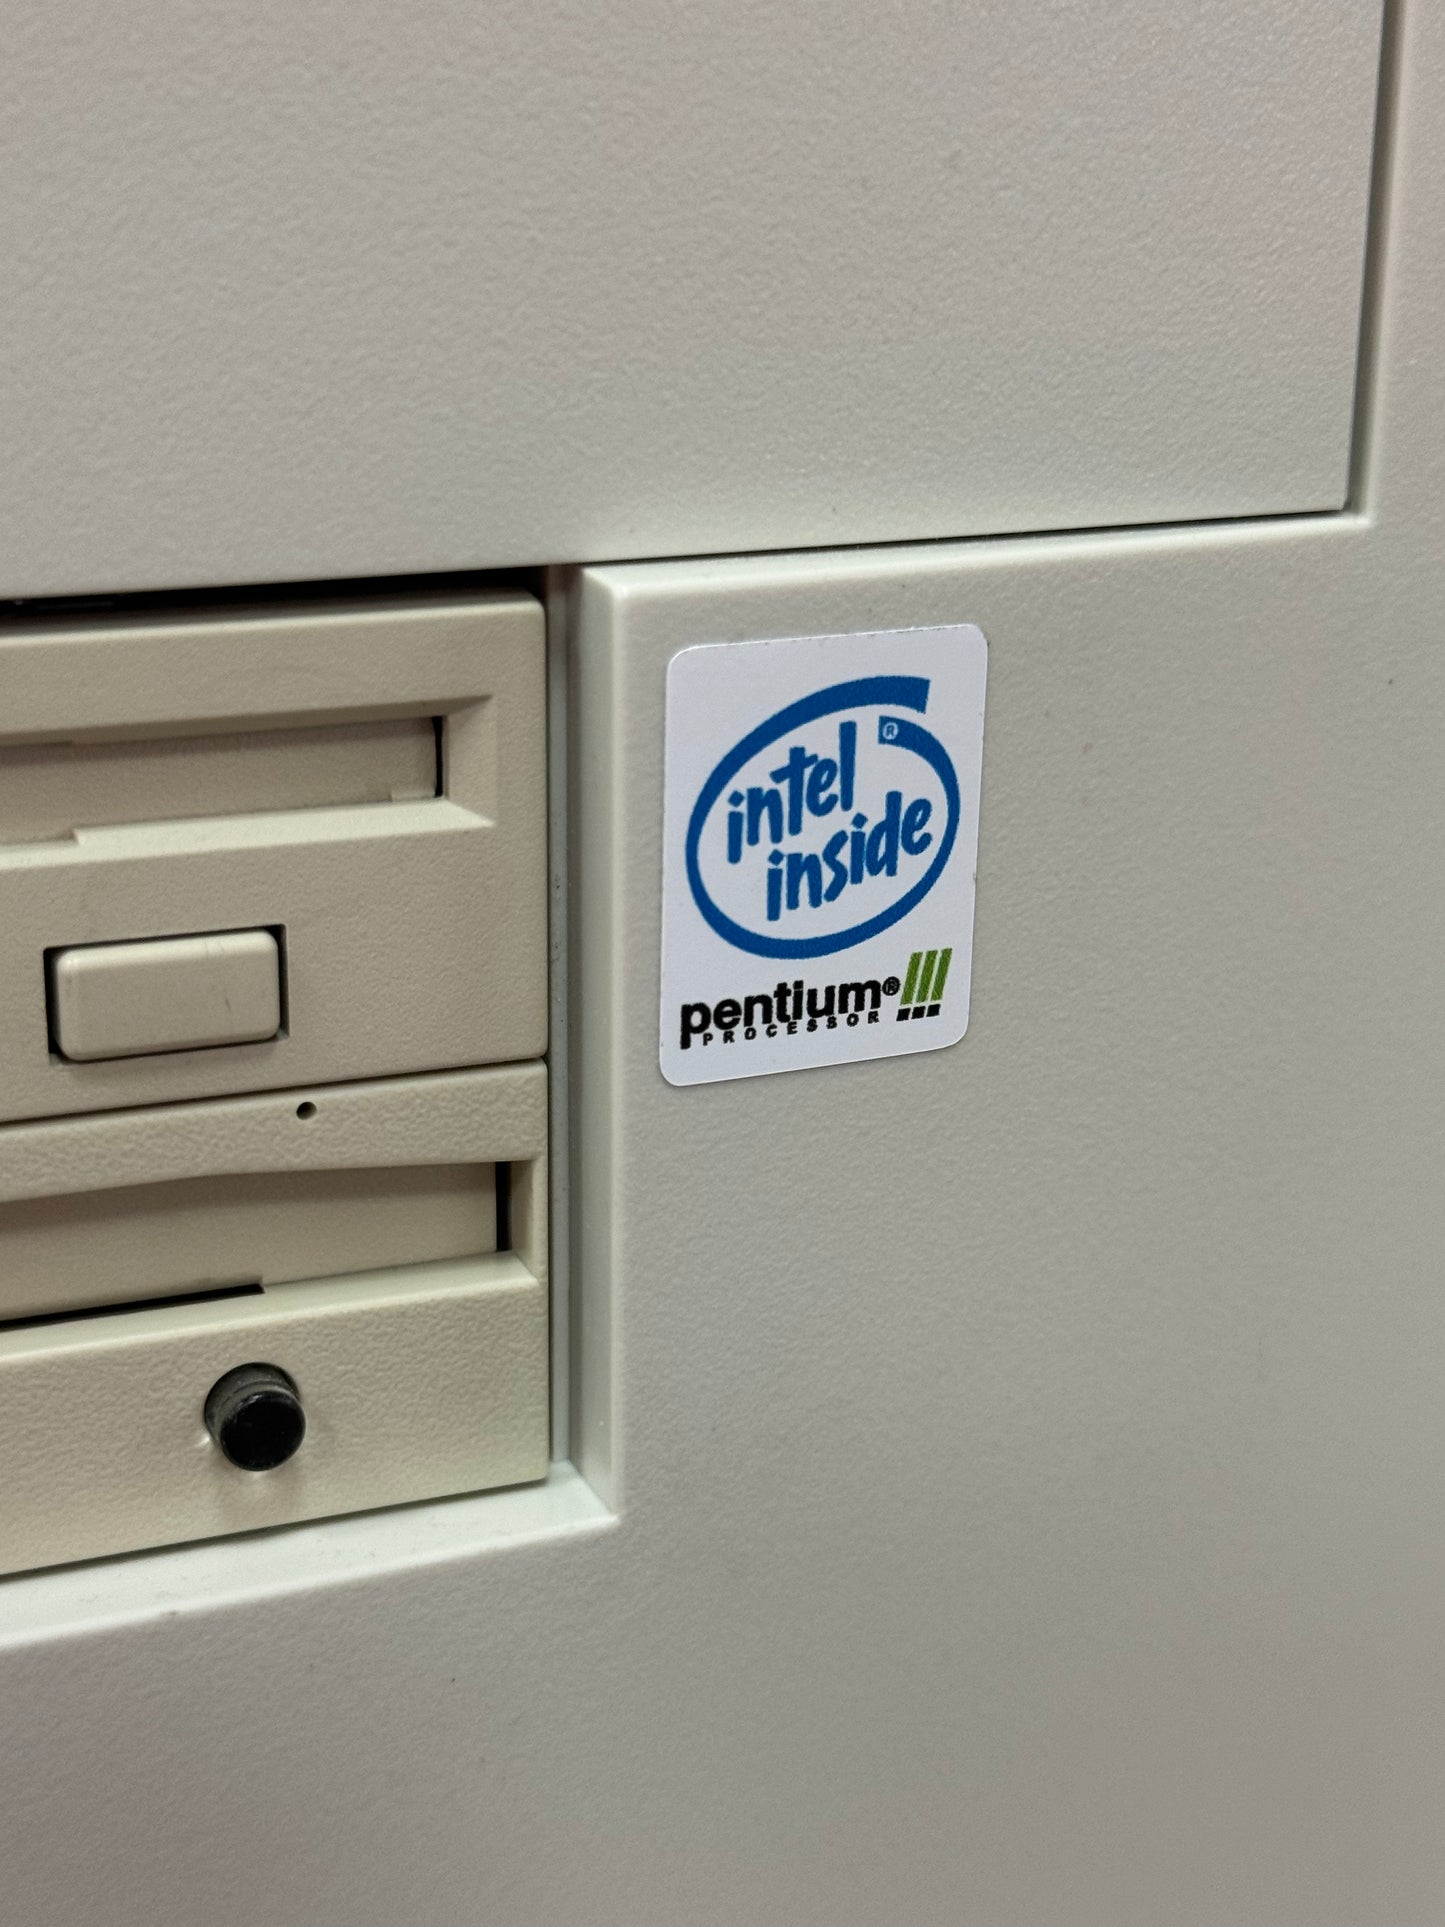 Pentium III Case Badge Sticker - White